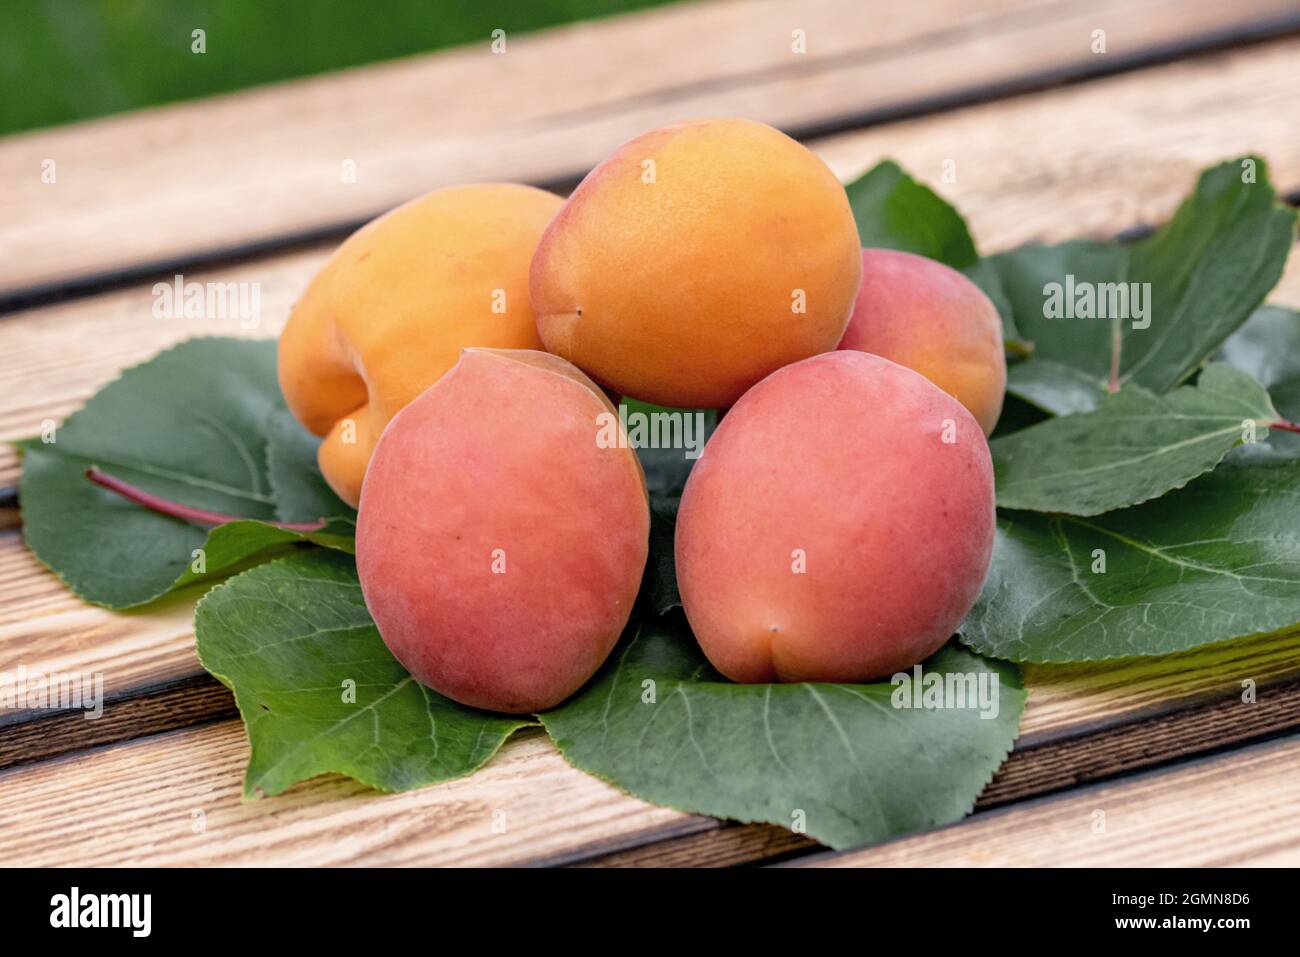 Abricot (Prunus armeniaca 'Farbaly', Prunus armeniaca Farbaly), abricot du cultivar Farbaly Banque D'Images